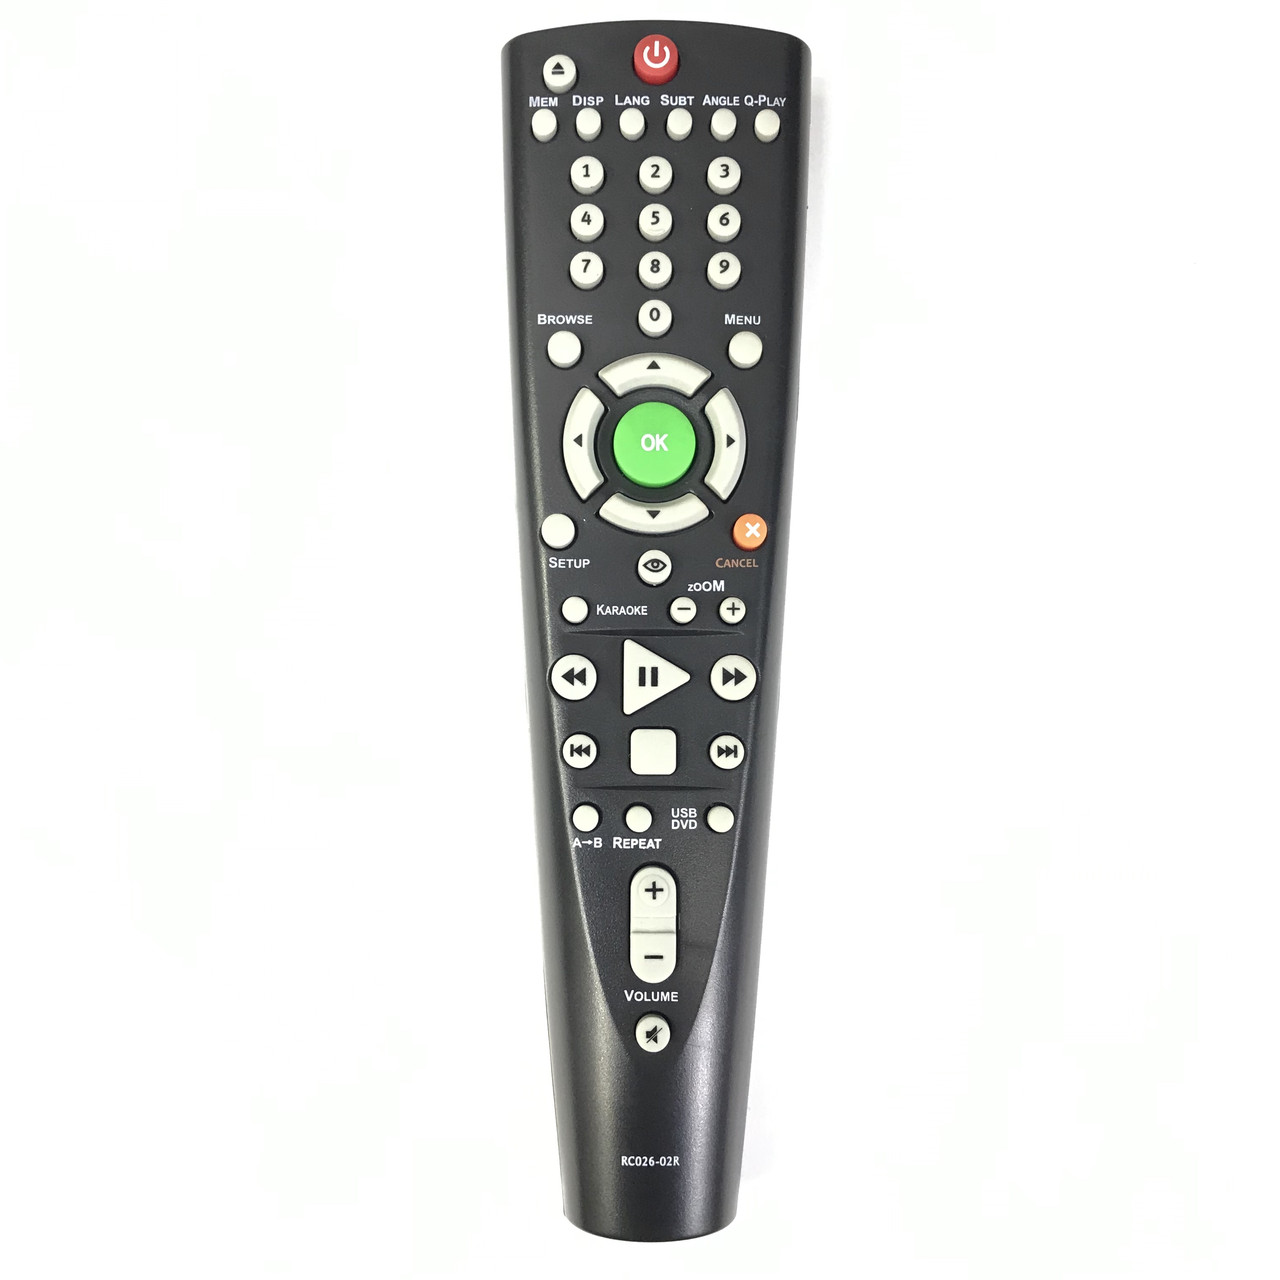 Пульт дистанционного управления BBK RC026-02R с USB [DVD], фото 1